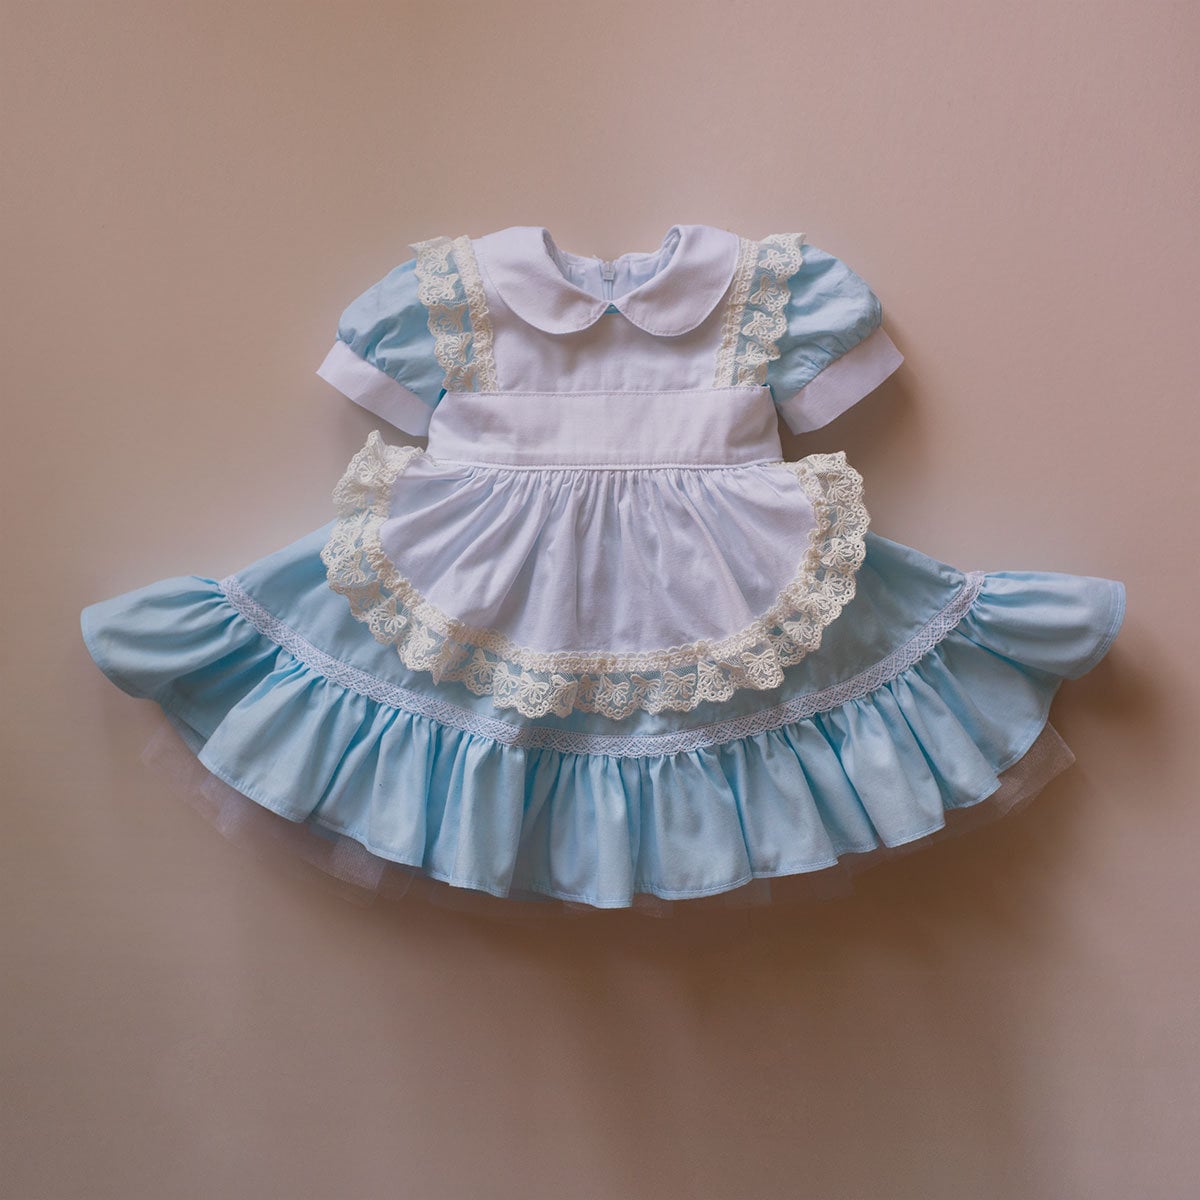 Alice in Wonderland First Birthday Layette Set for Baby | shopDisney